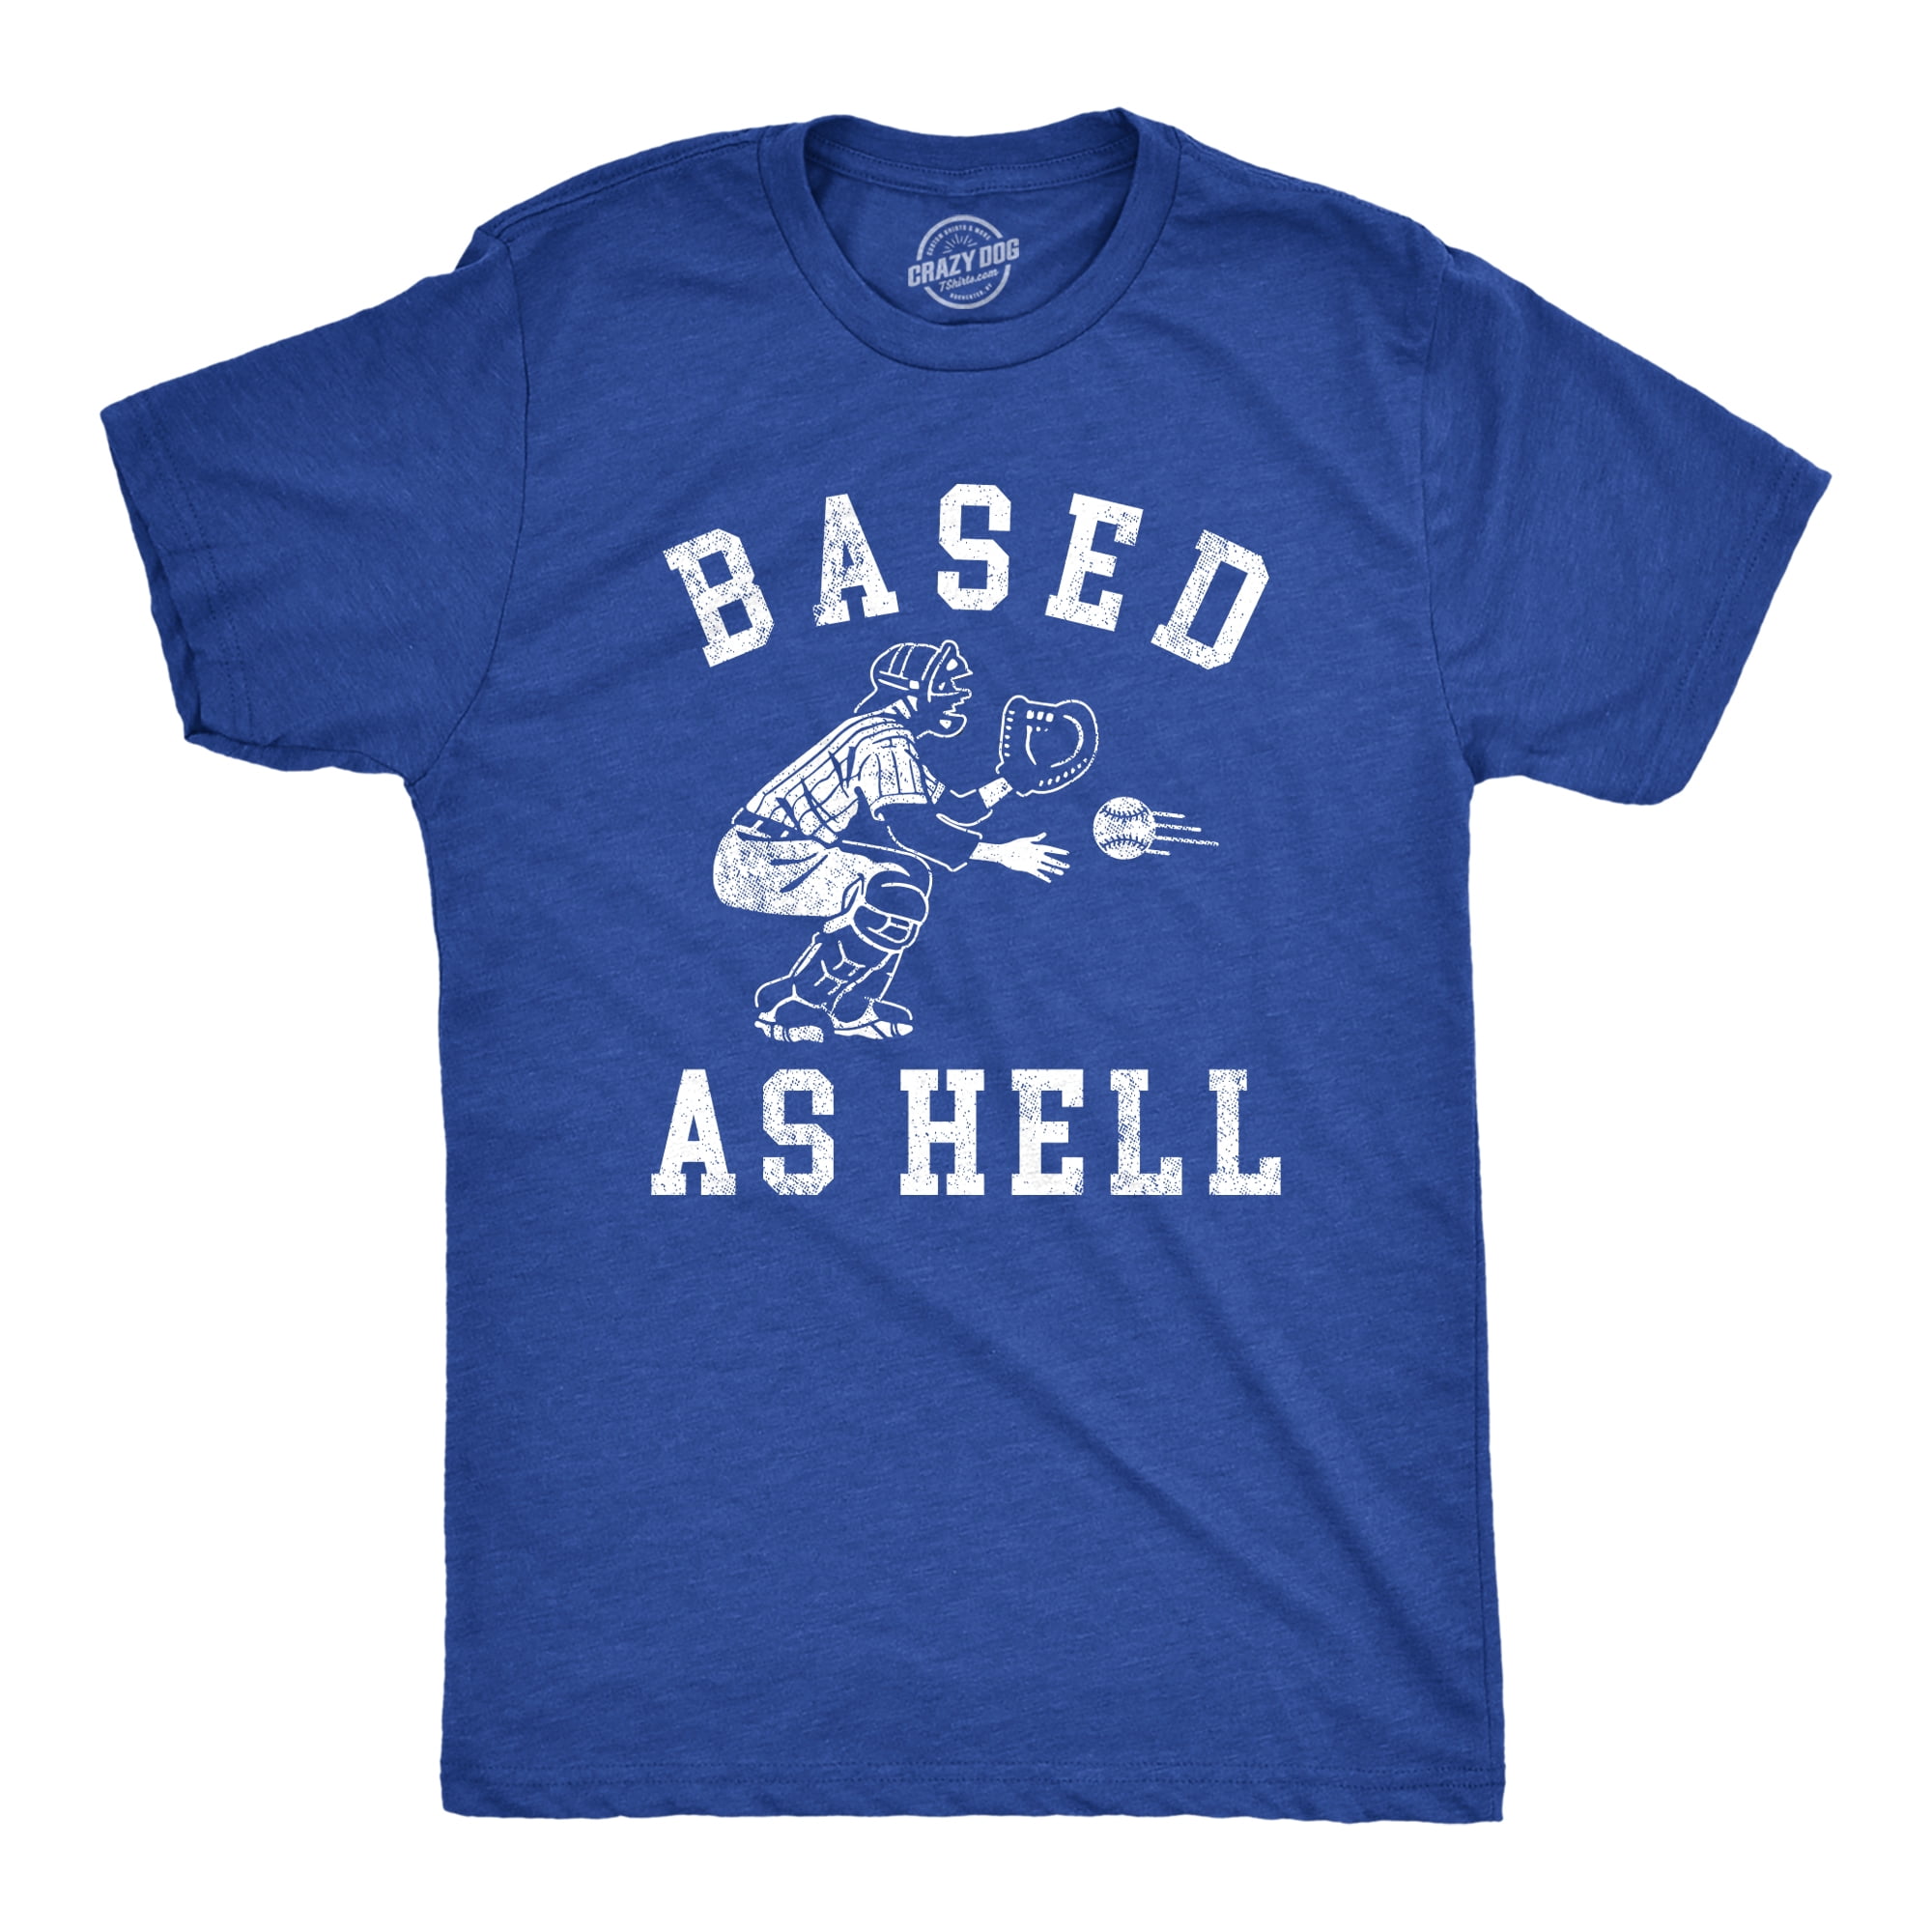 Baseball Sayings Shirts